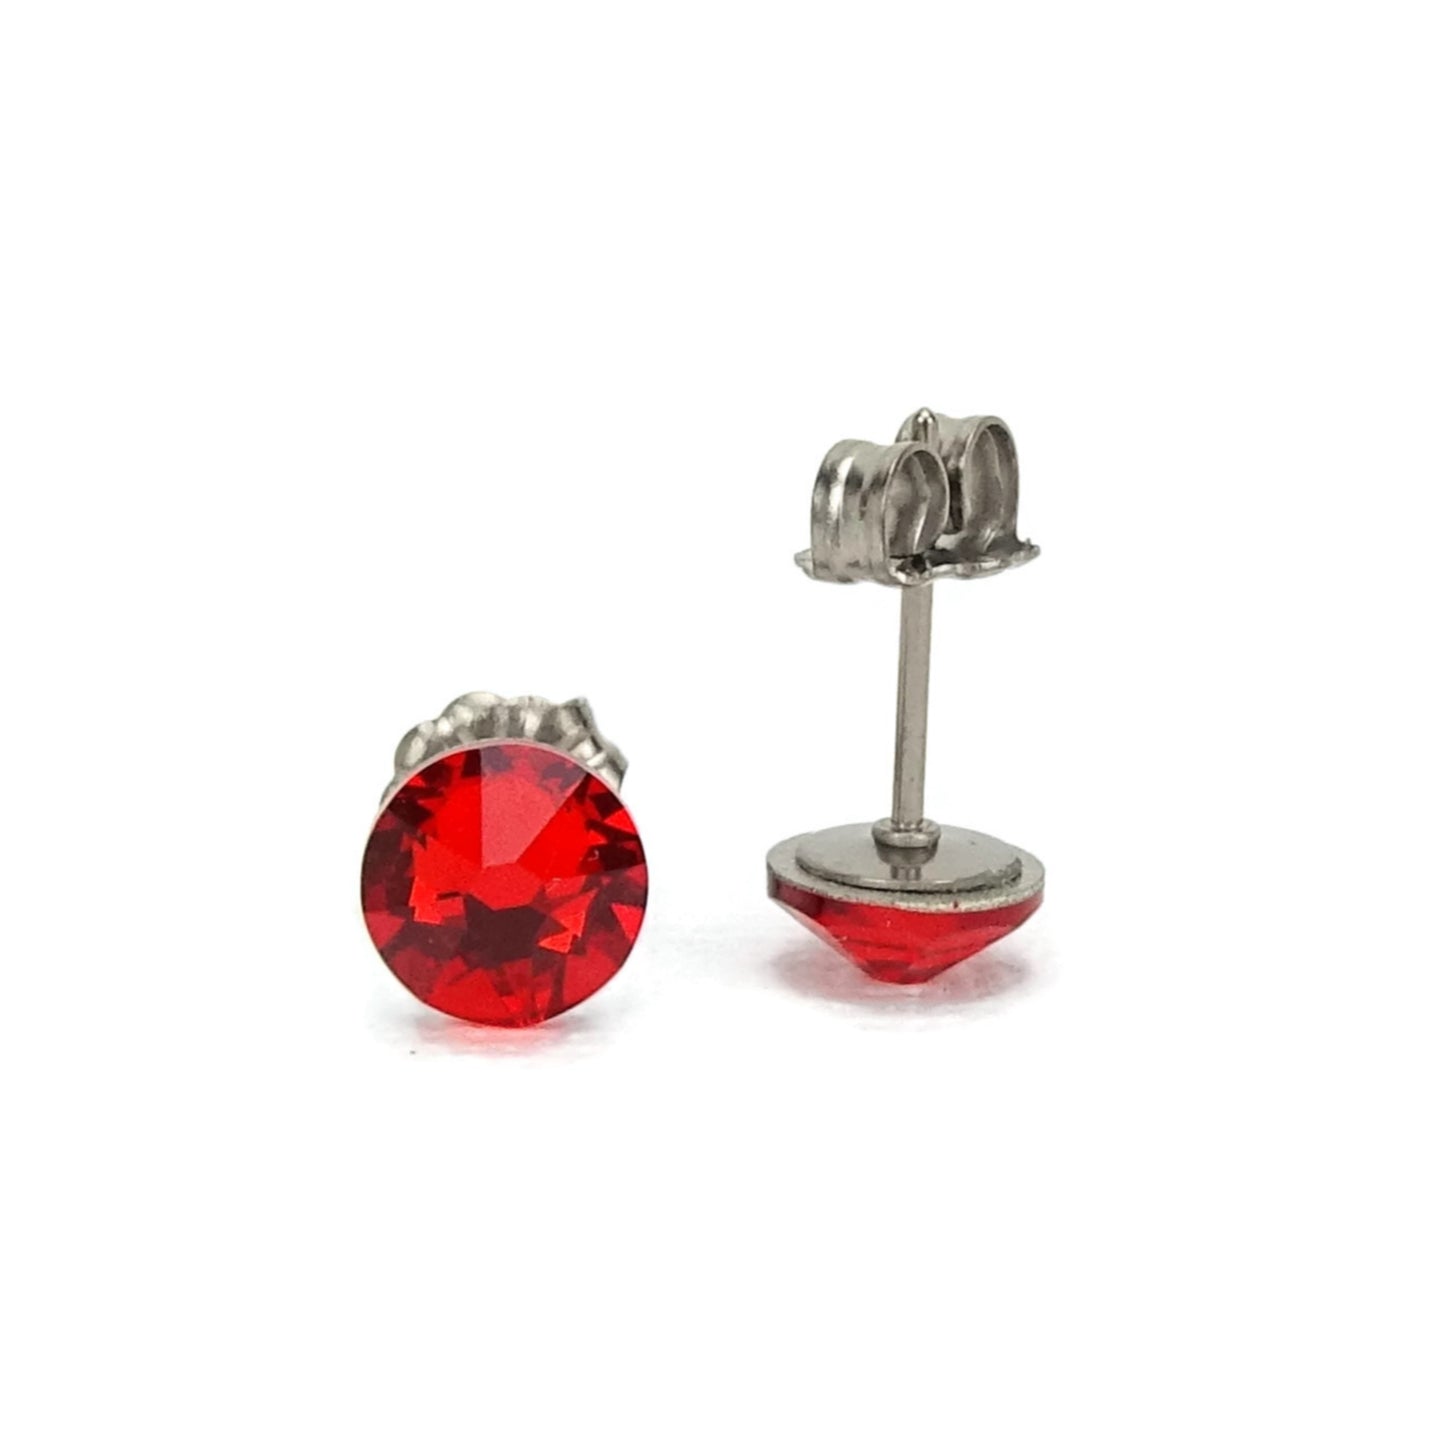 Red Titanium Stud Earrings for Sensitive Ears